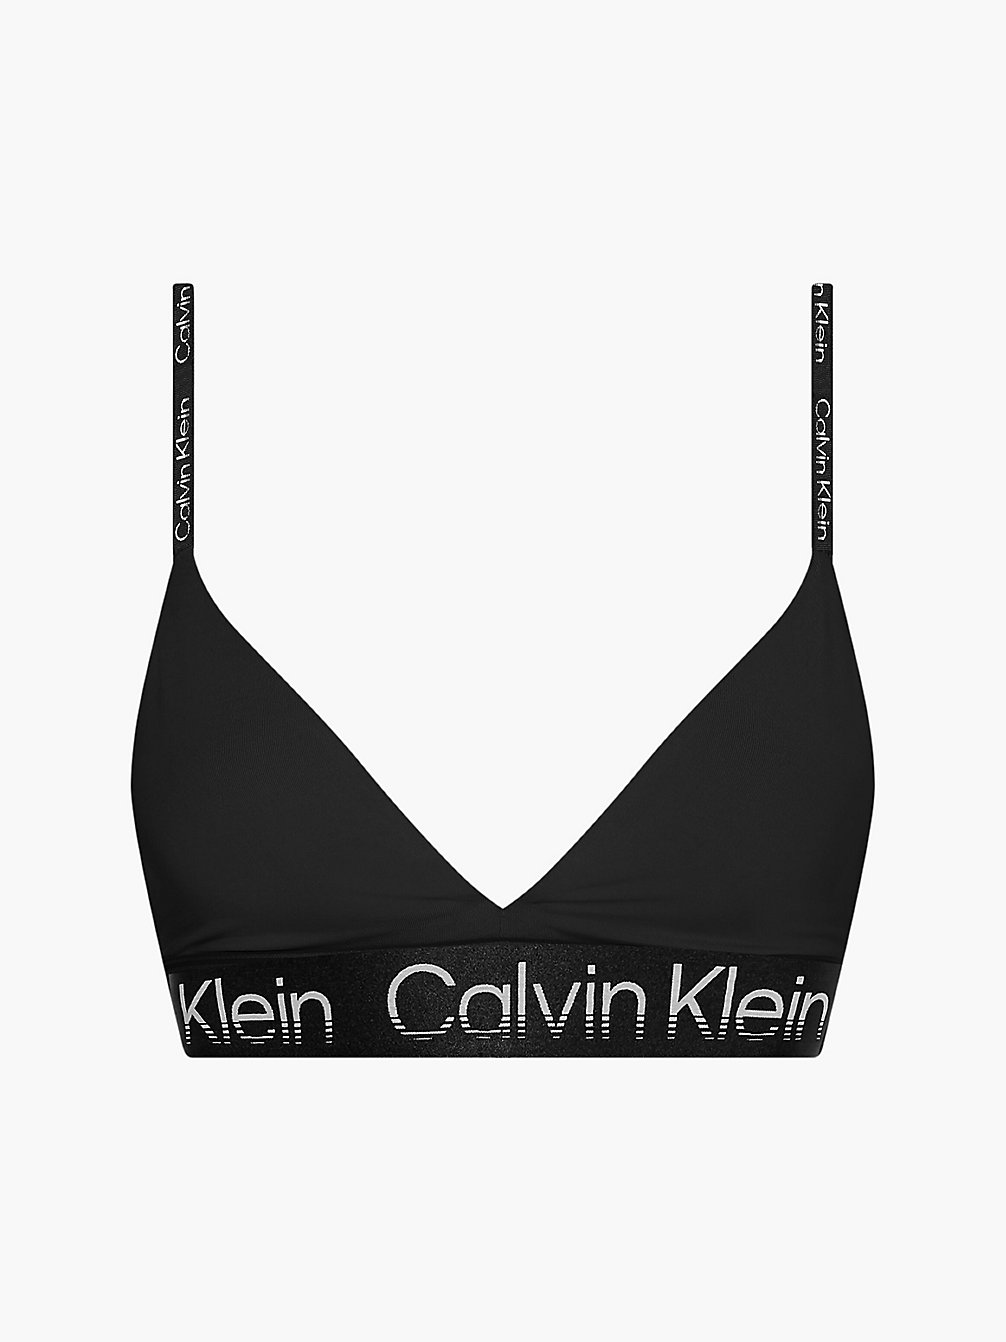 CK BLACK Brassière De Sport Faibles Impacts En Polyester Recyclé undefined femmes Calvin Klein